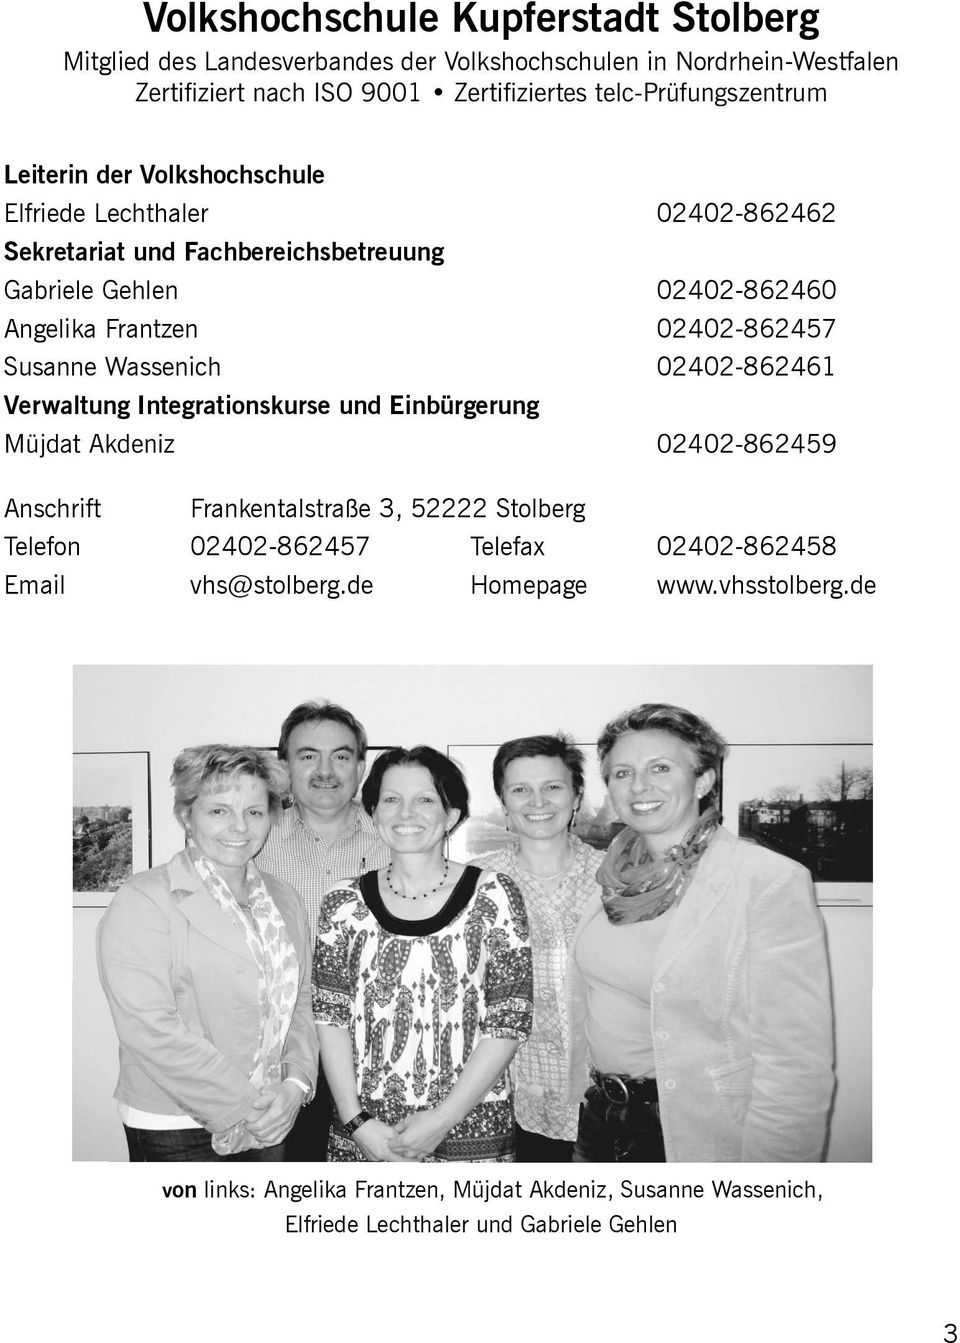 02402-862461 Verwaltung Integrationskurse und Einbürgerung Anschrift Frankentalstraße 3, 52222 Stolberg Telefon 02402-862457 Telefax 02402-862458